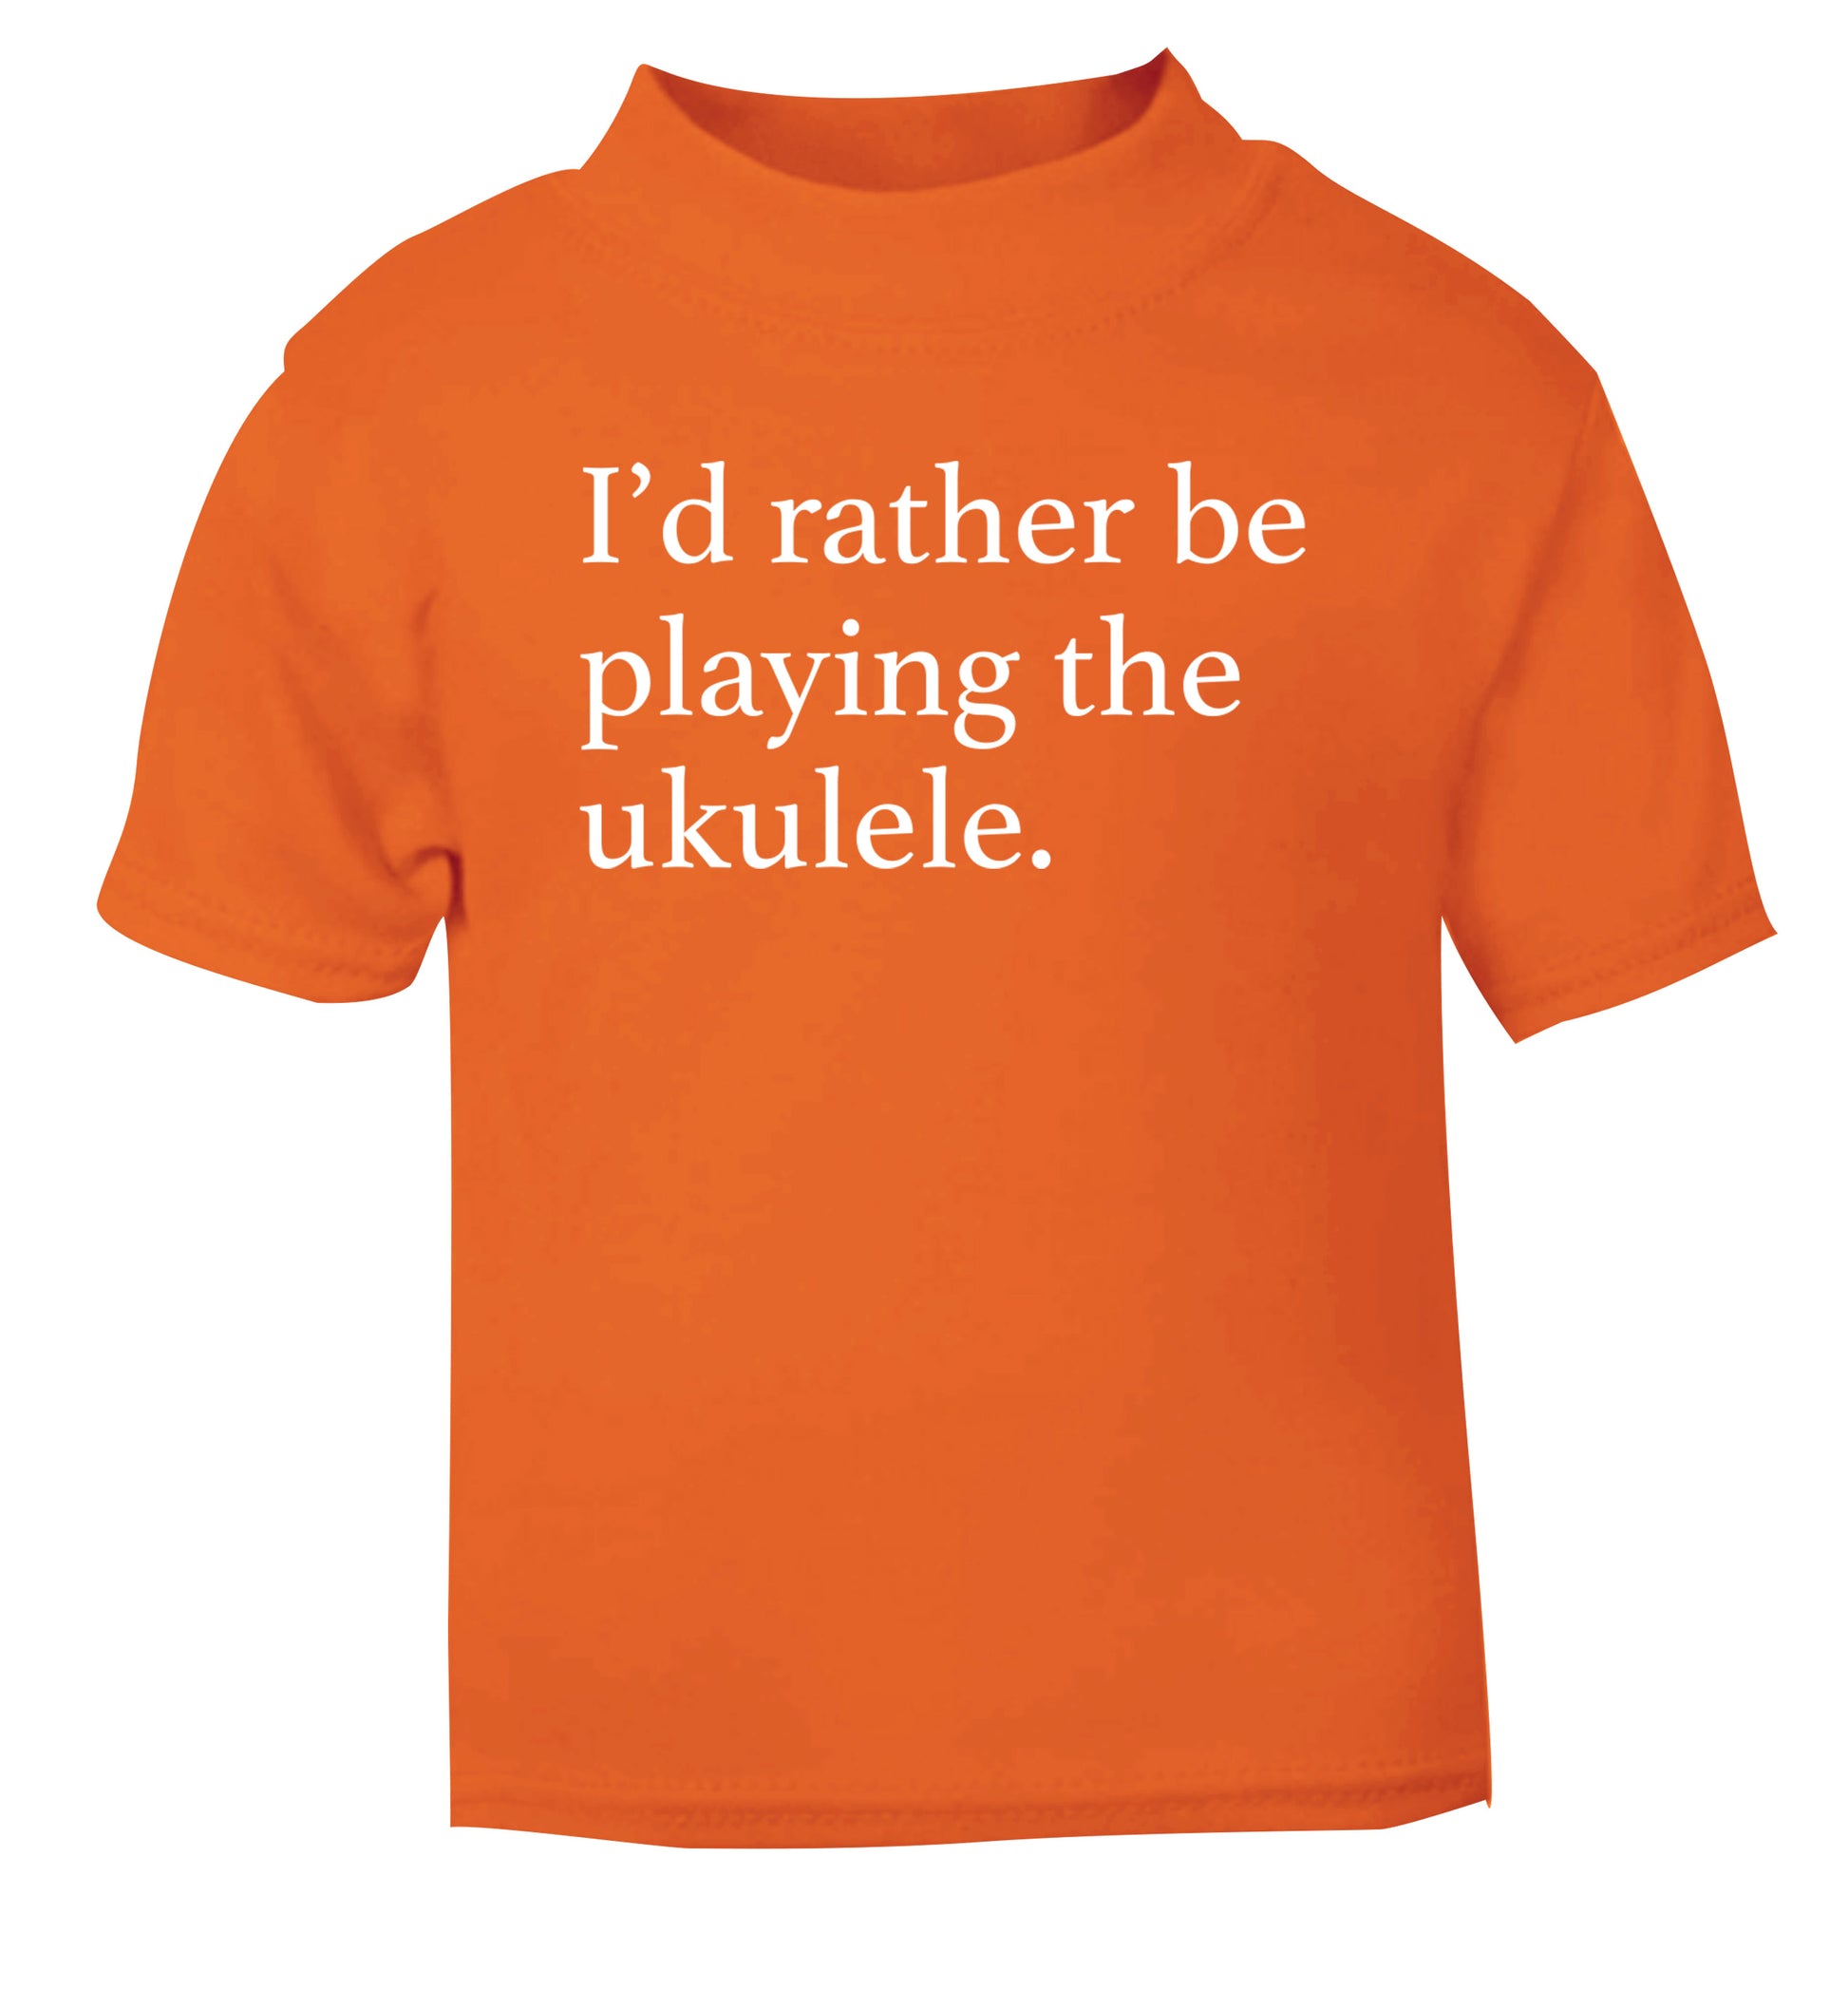 I'd rather by playing the ukulele orange Baby Toddler Tshirt 2 Years